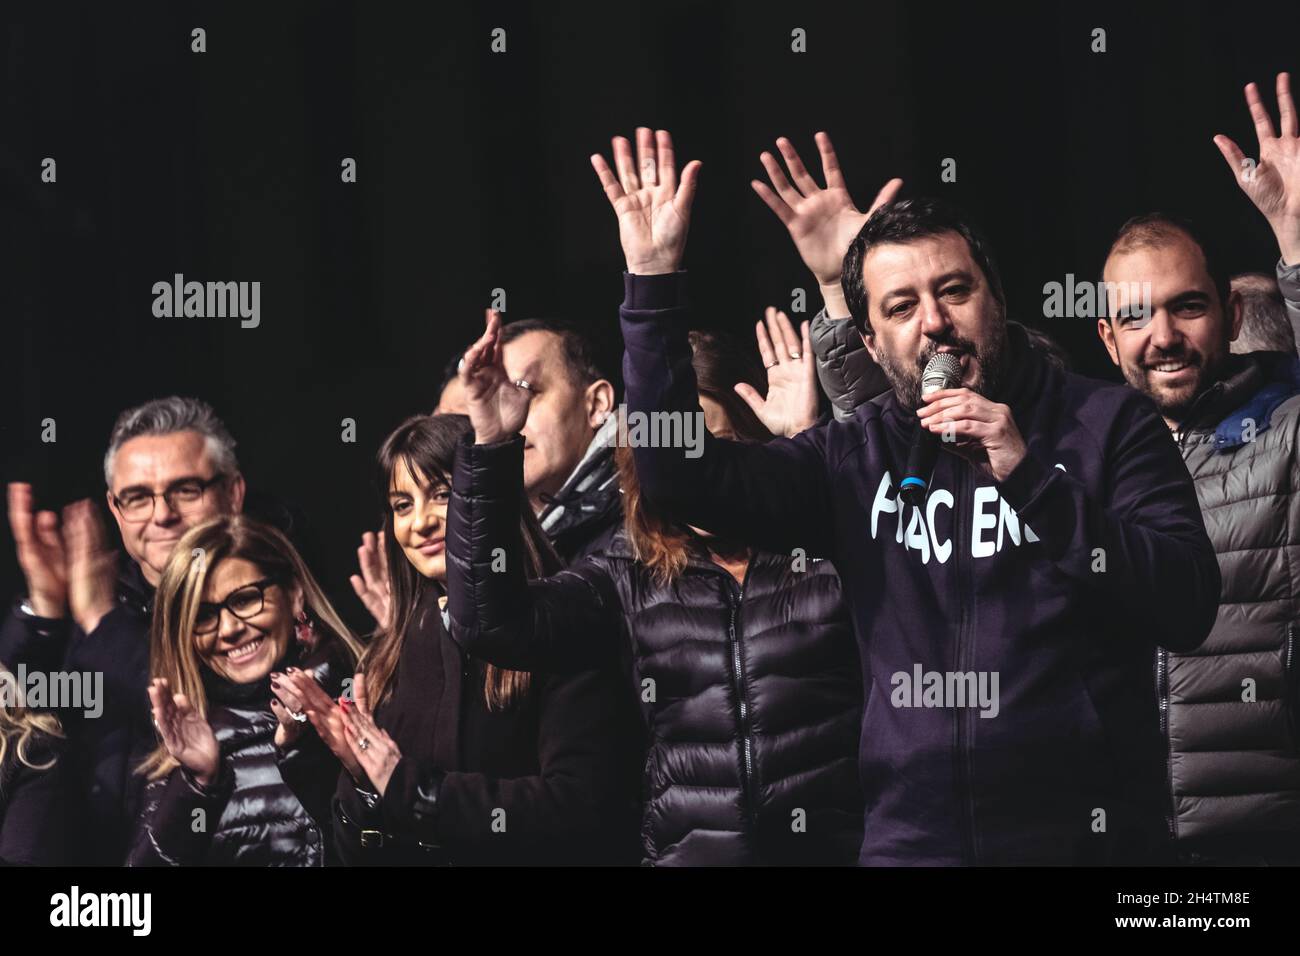 Piacenza, Italia, 14 gennaio 2020. Matteo Salvini, leader del partito della Lega, incontra gli elettori durante le elezioni politiche regionali. Foto Stock